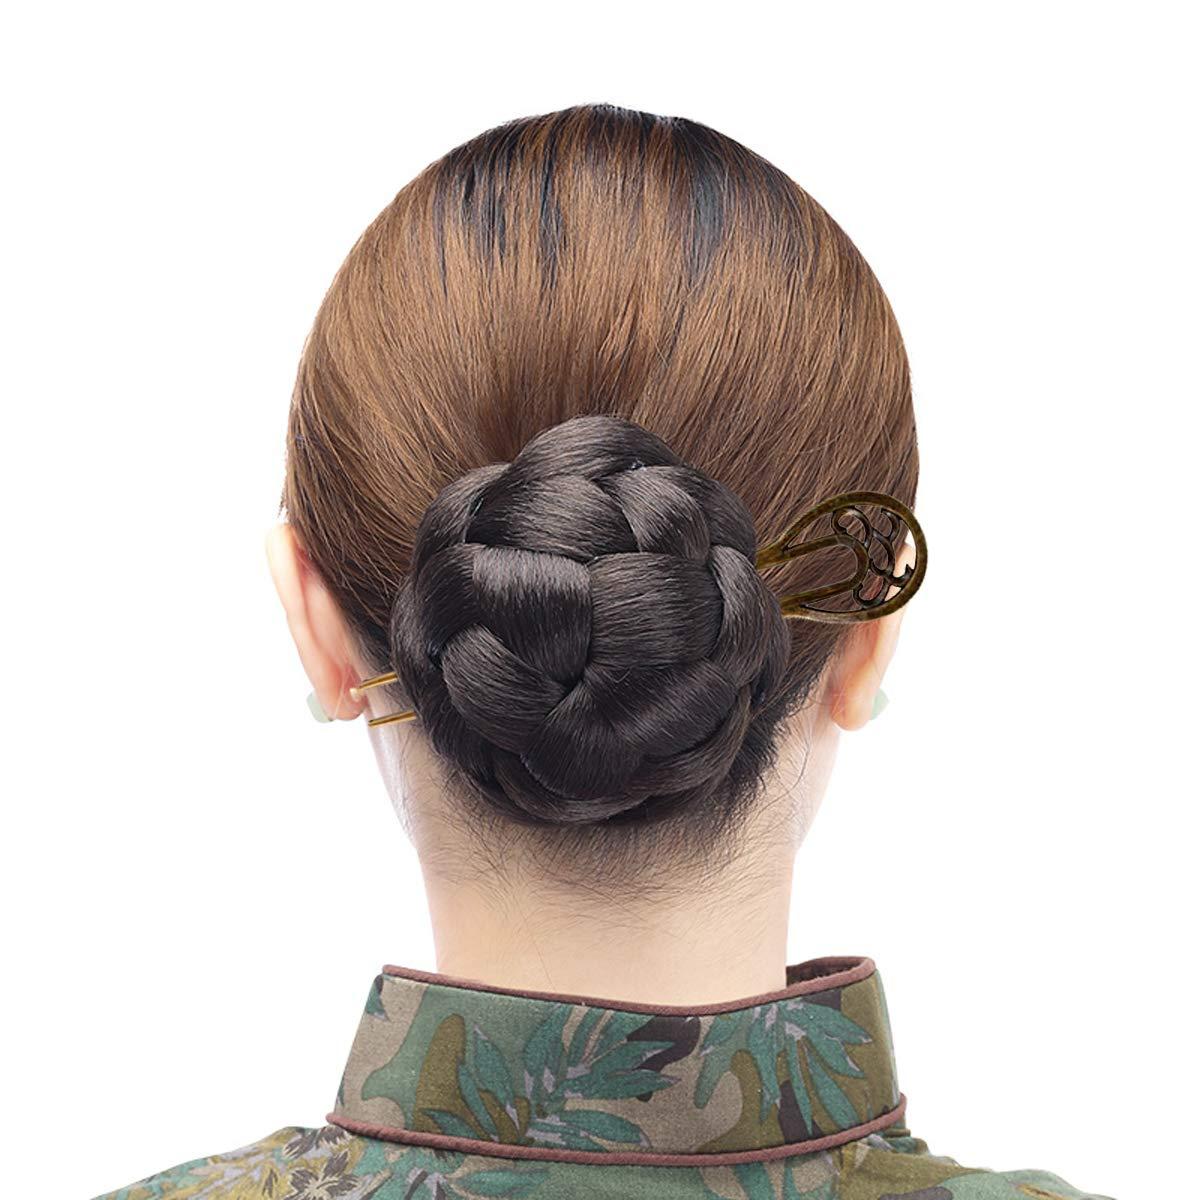 6pcs Hair Chopsticks Simple Hairpin Decorative Hair Holder